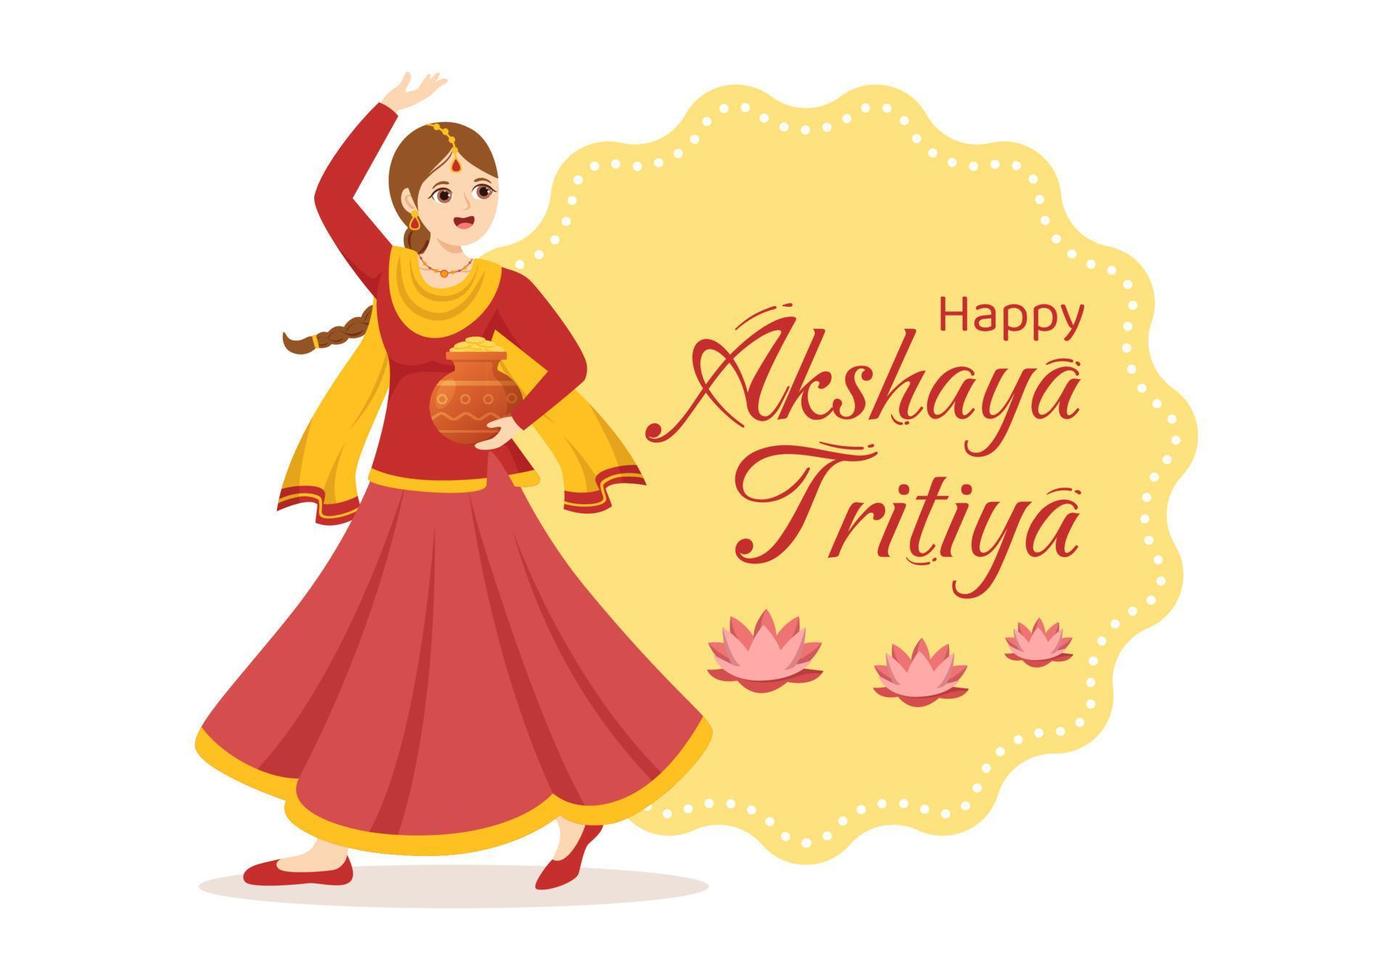 akshaya tritiya festival illustratie met een gouden kalash, pot en goud munten voor dhanteras viering in hand- getrokken voor landen bladzijde Sjablonen vector